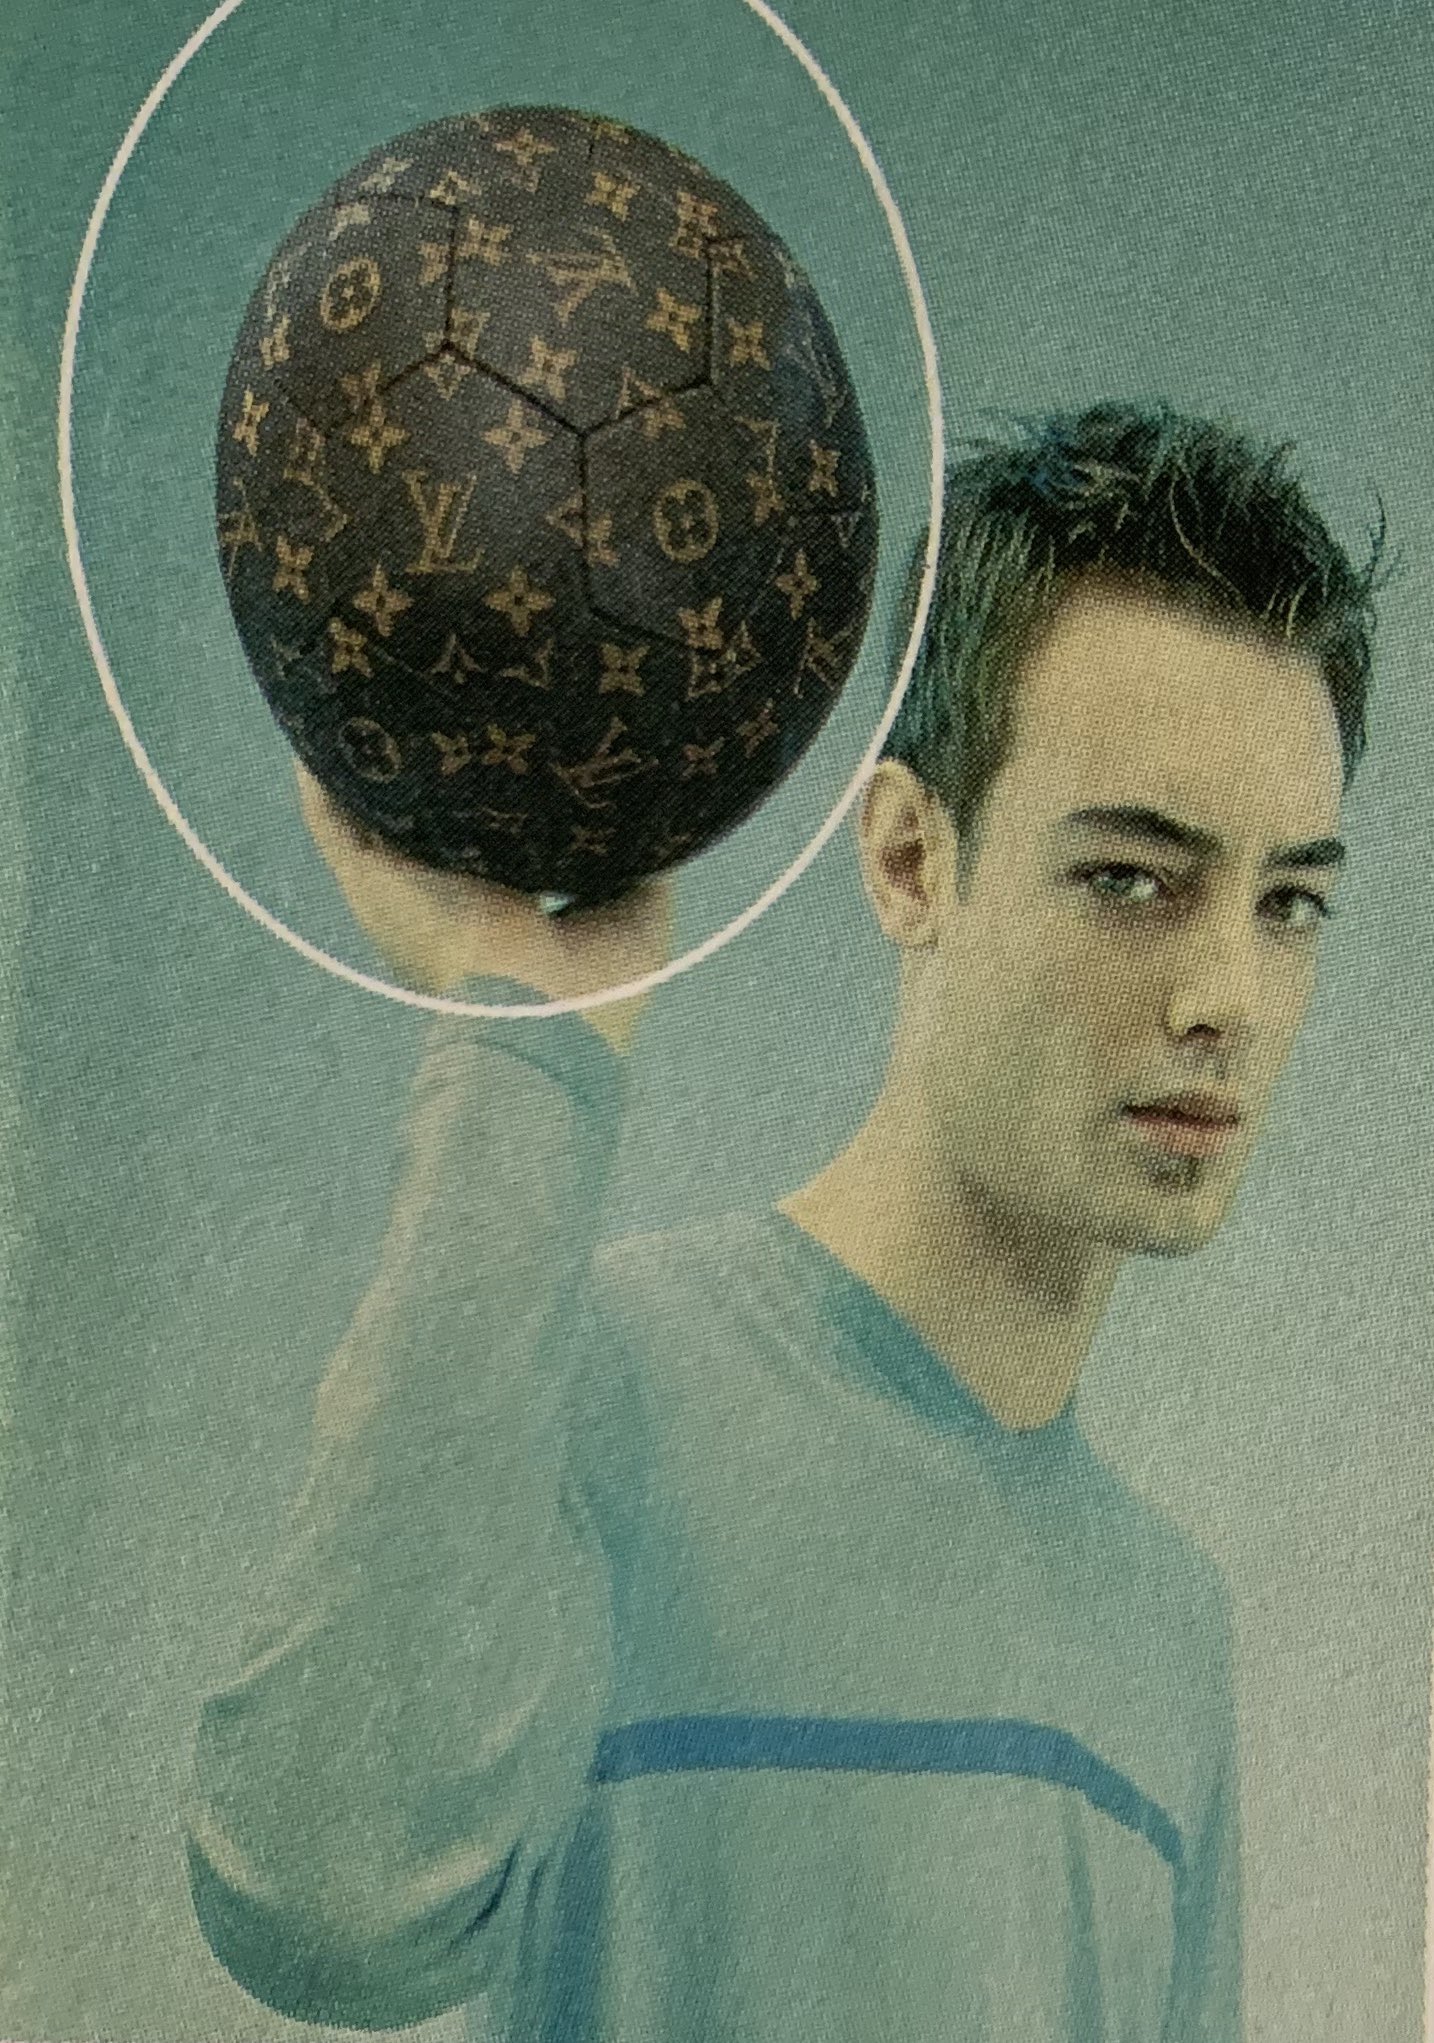 Soccer ball, Louis Vuitton, world cup 1998